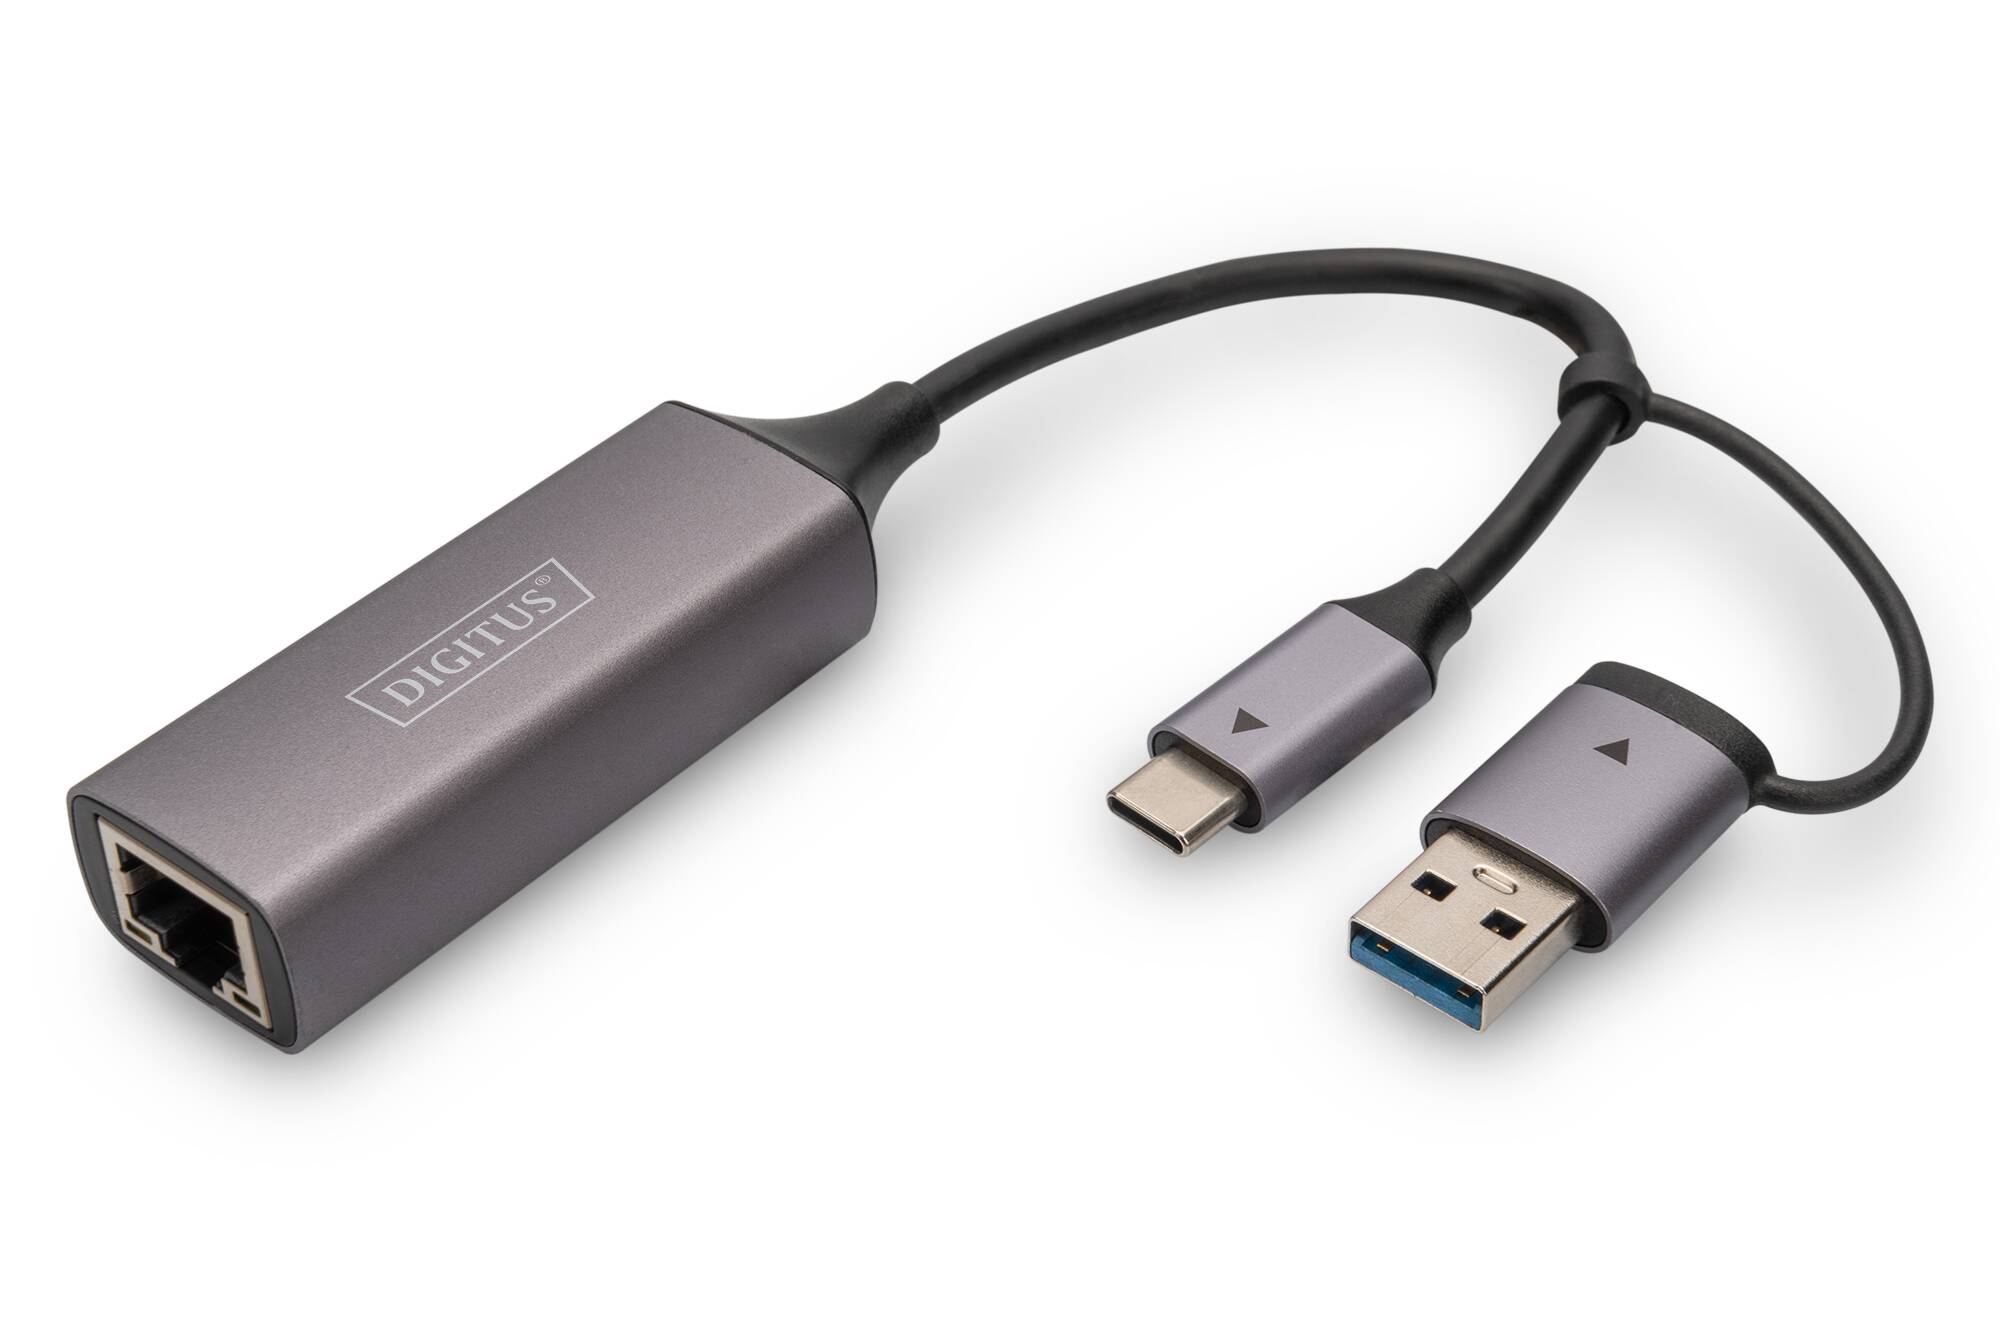 DIGITUS Adattatore Gigabit Ethernet USB Type-C 2.5G, USB-C + USB A (USB3.1/3.0)